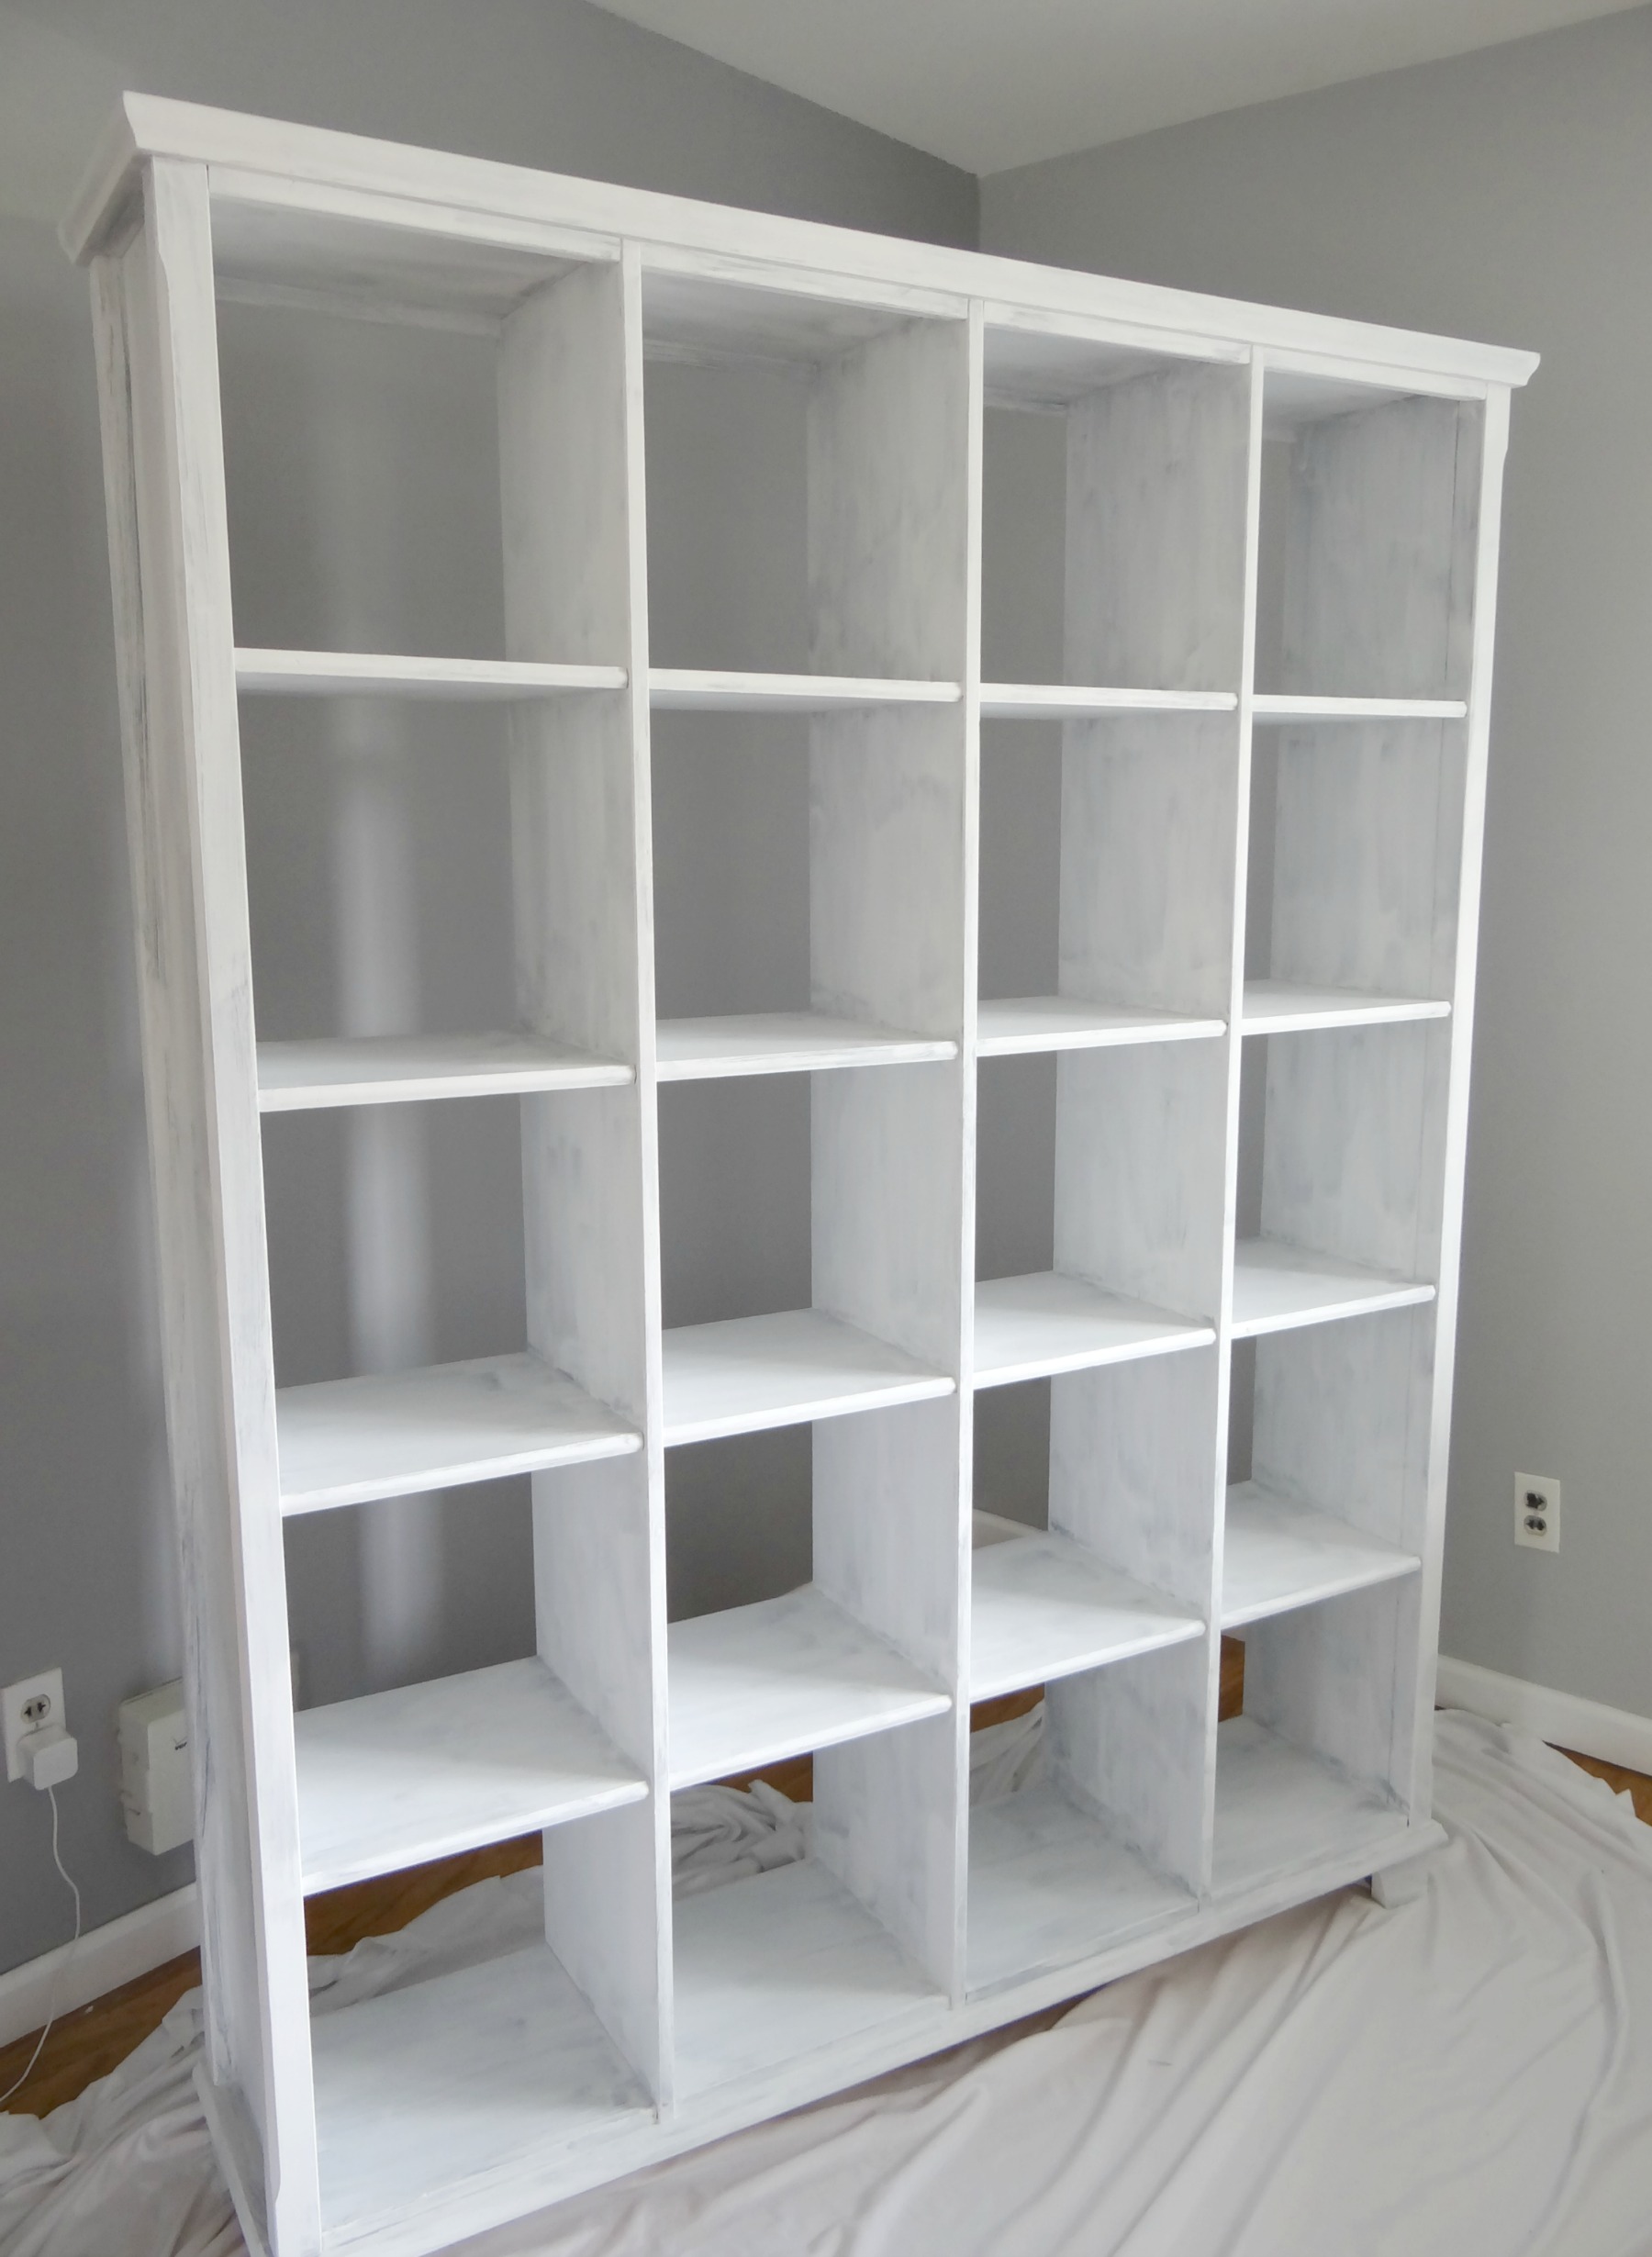 Repainting bookshelf white